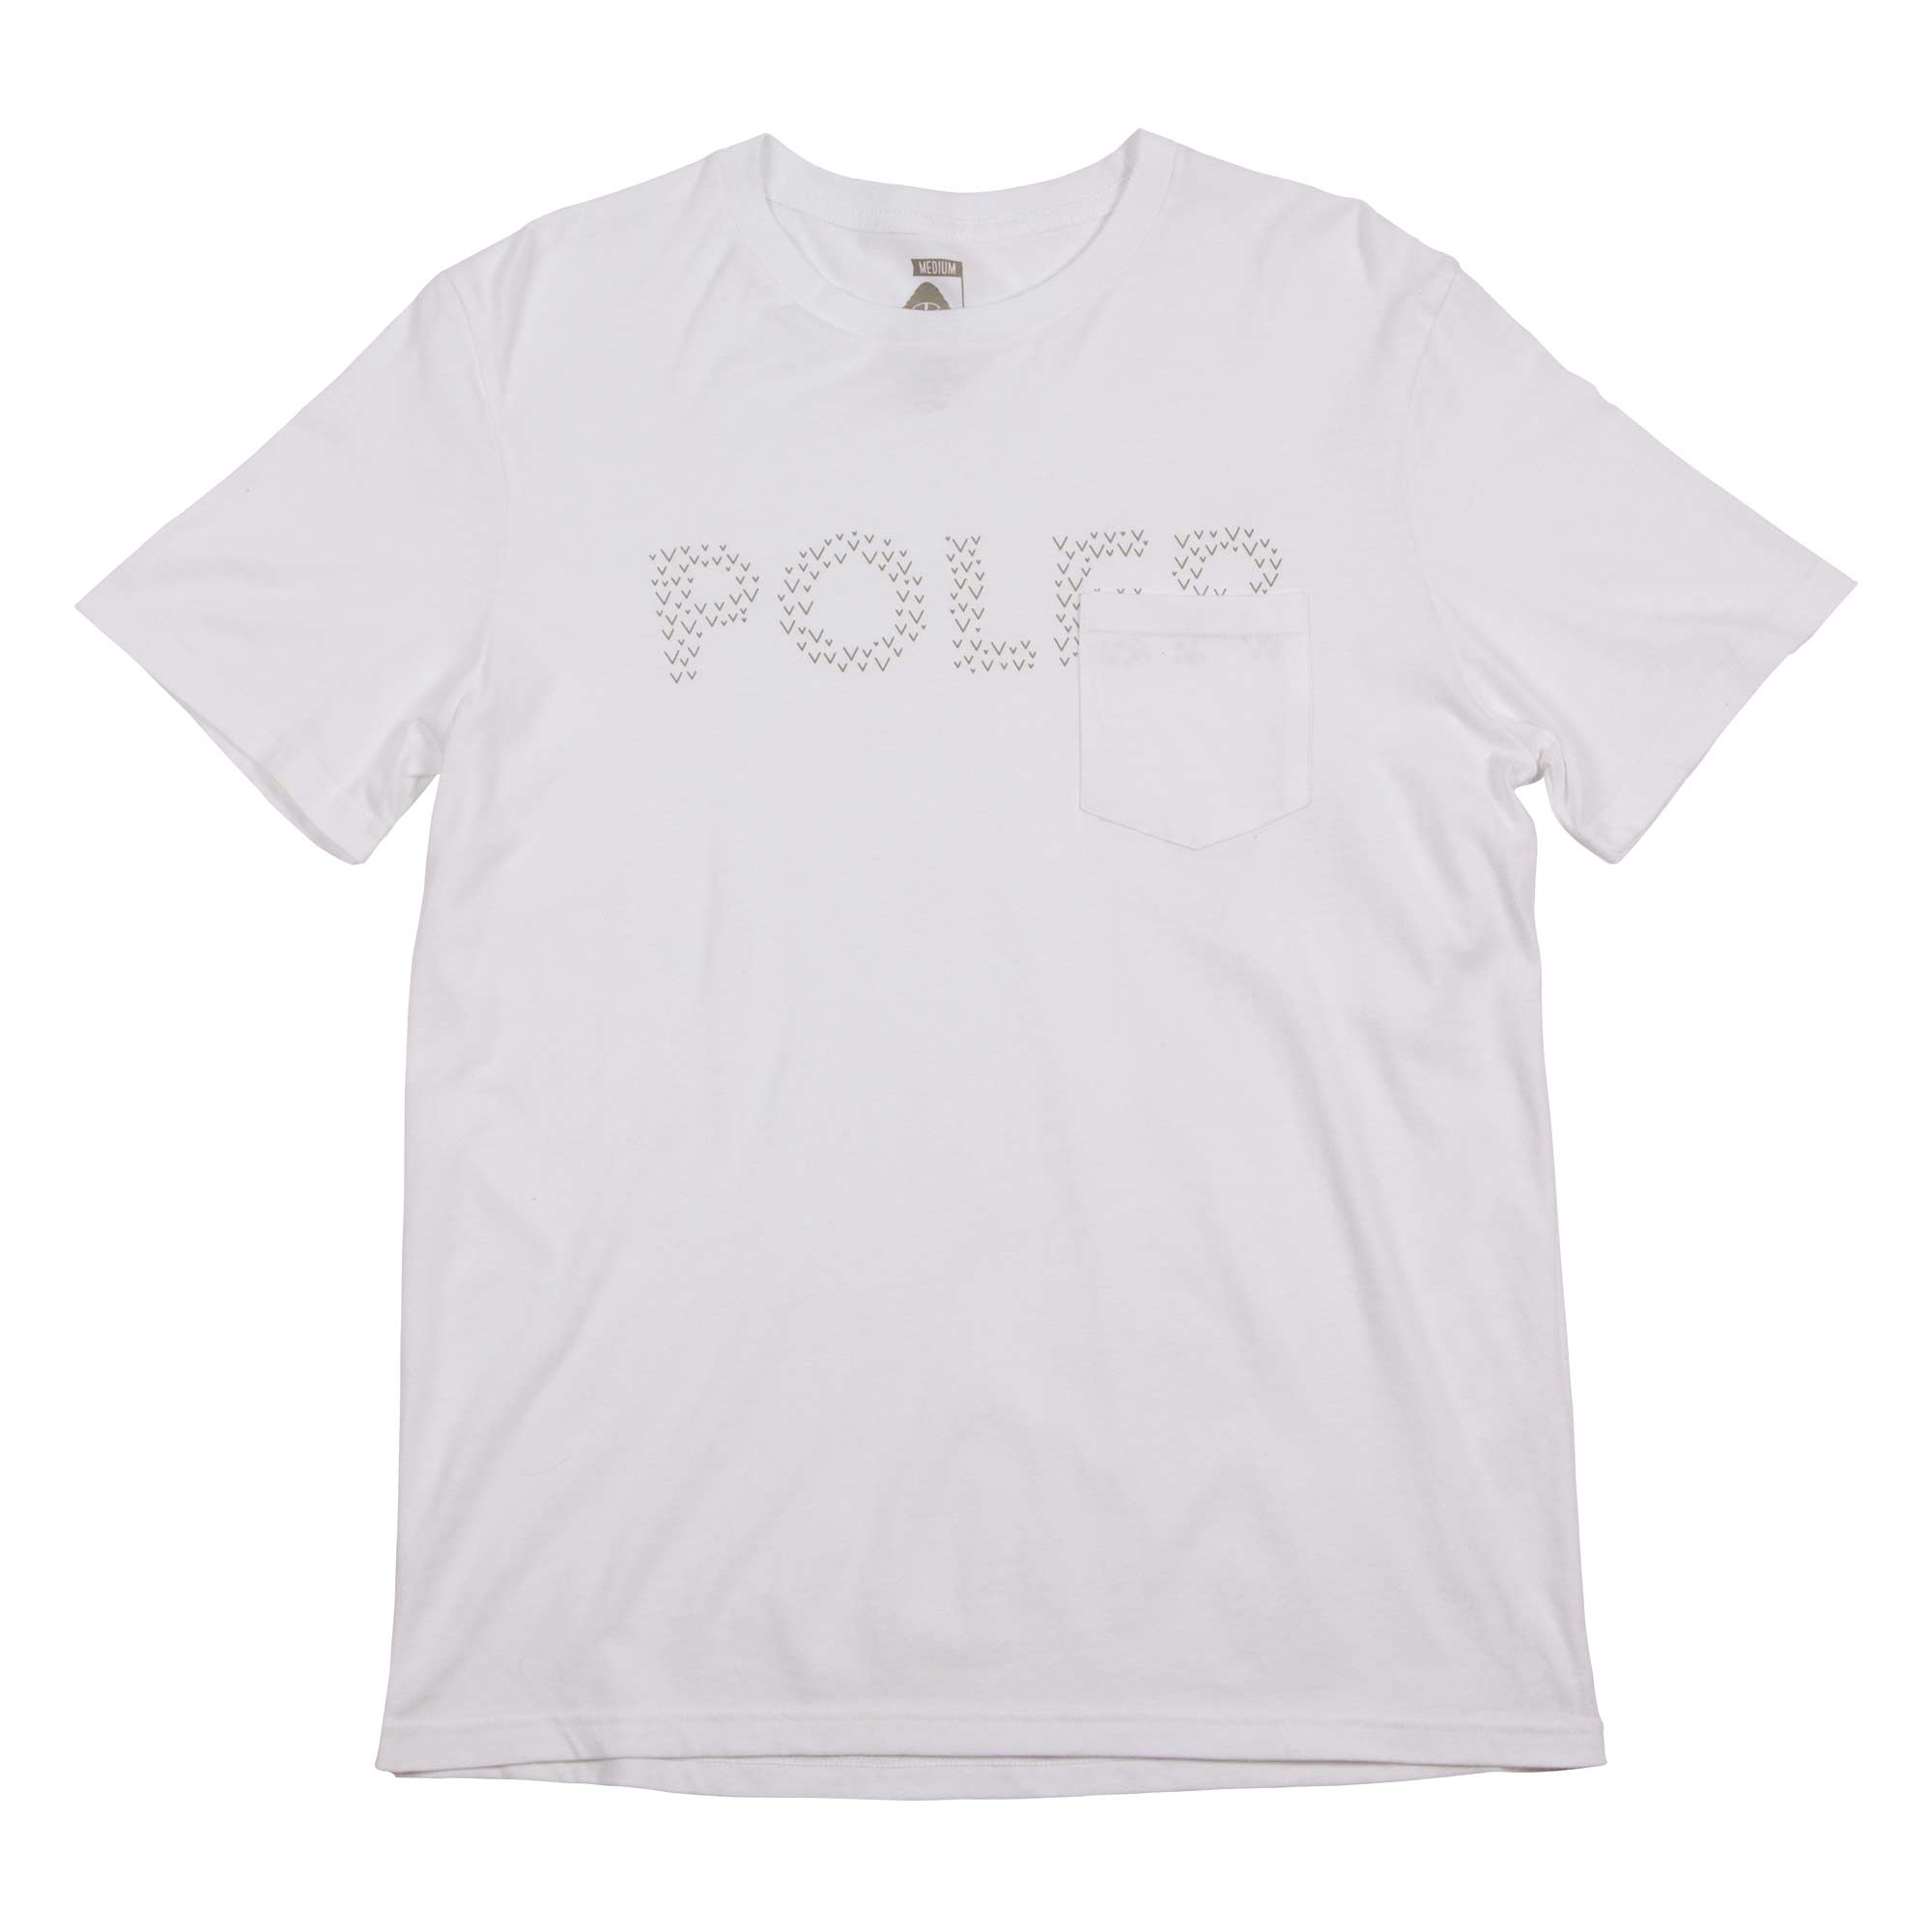 POLER T-Shirt TRACKS POCKET TEE white